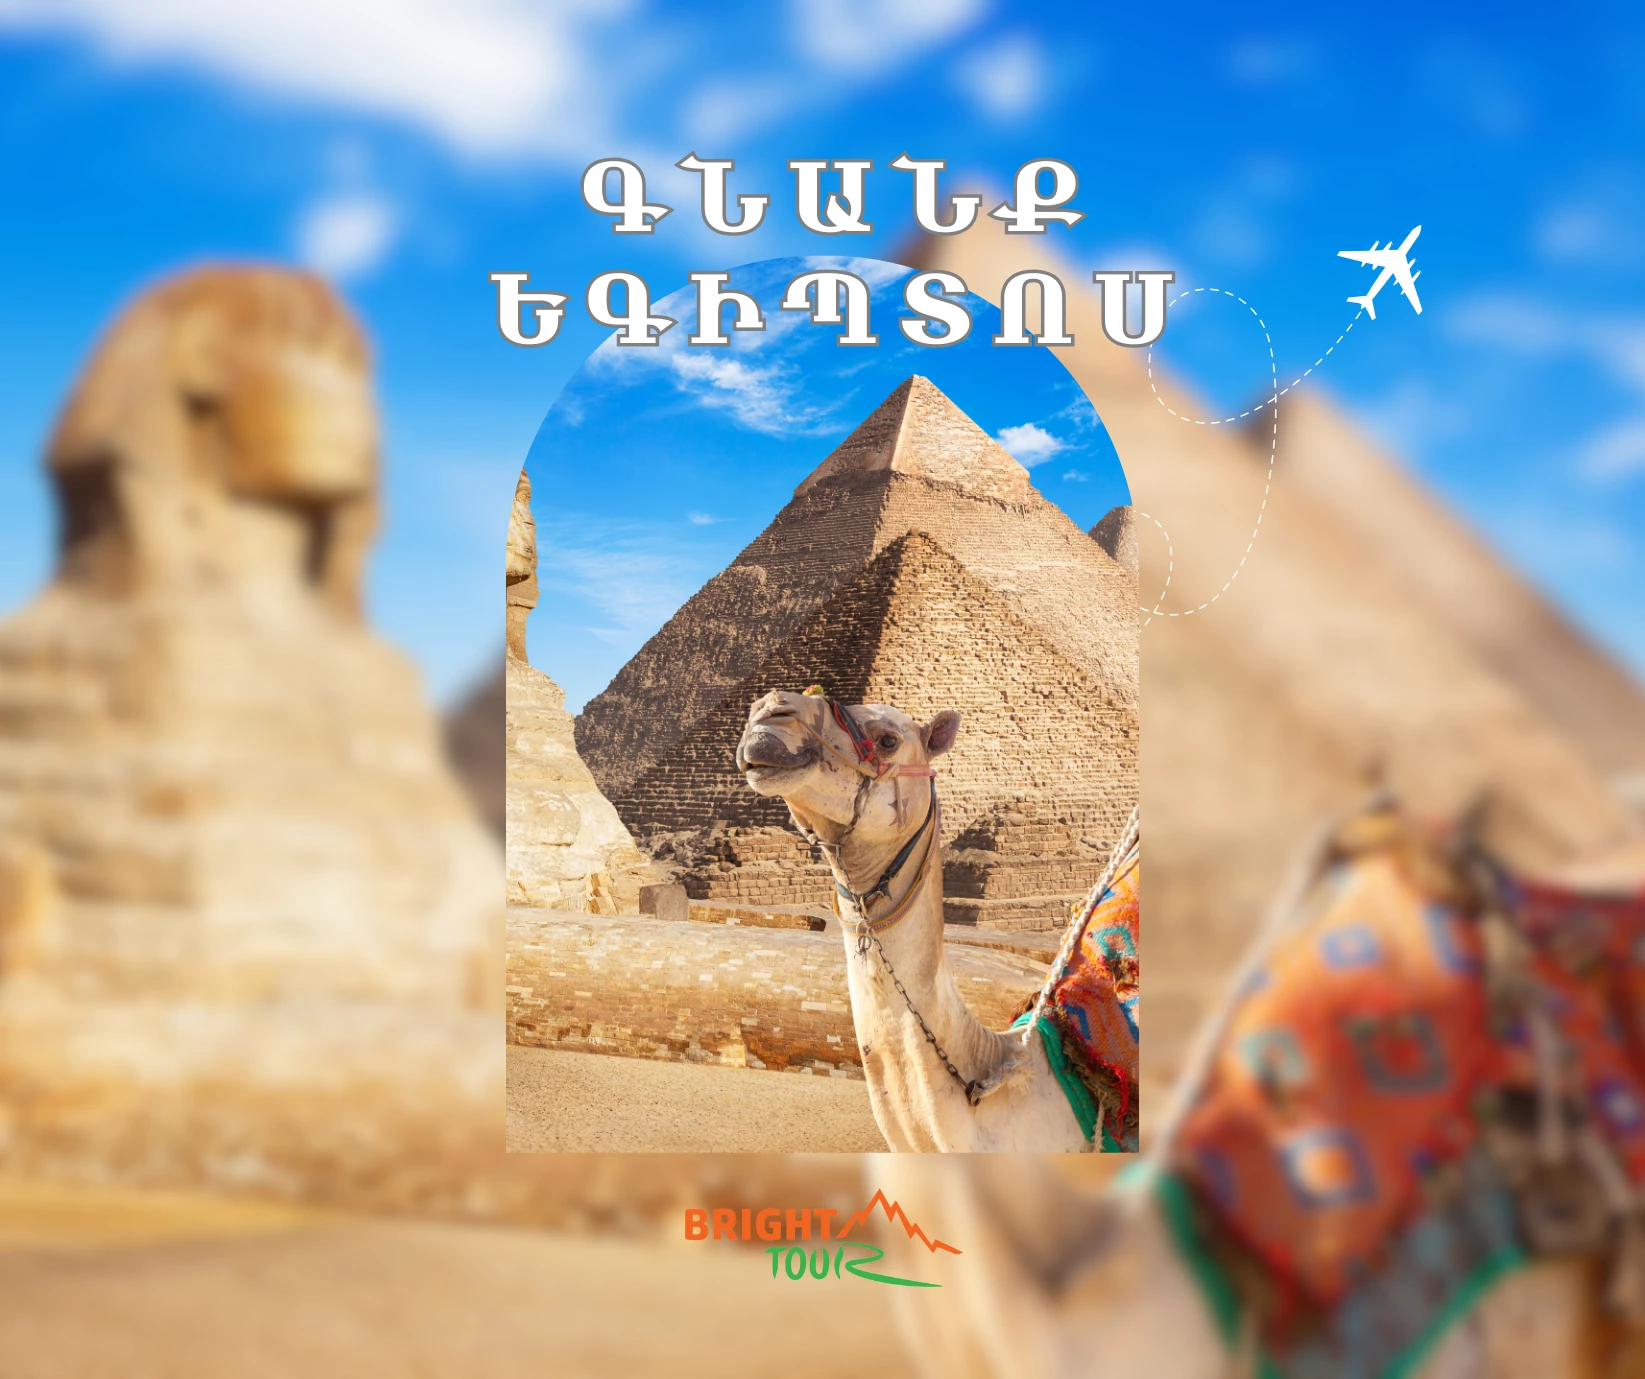 Դեպի Եգիպտոս